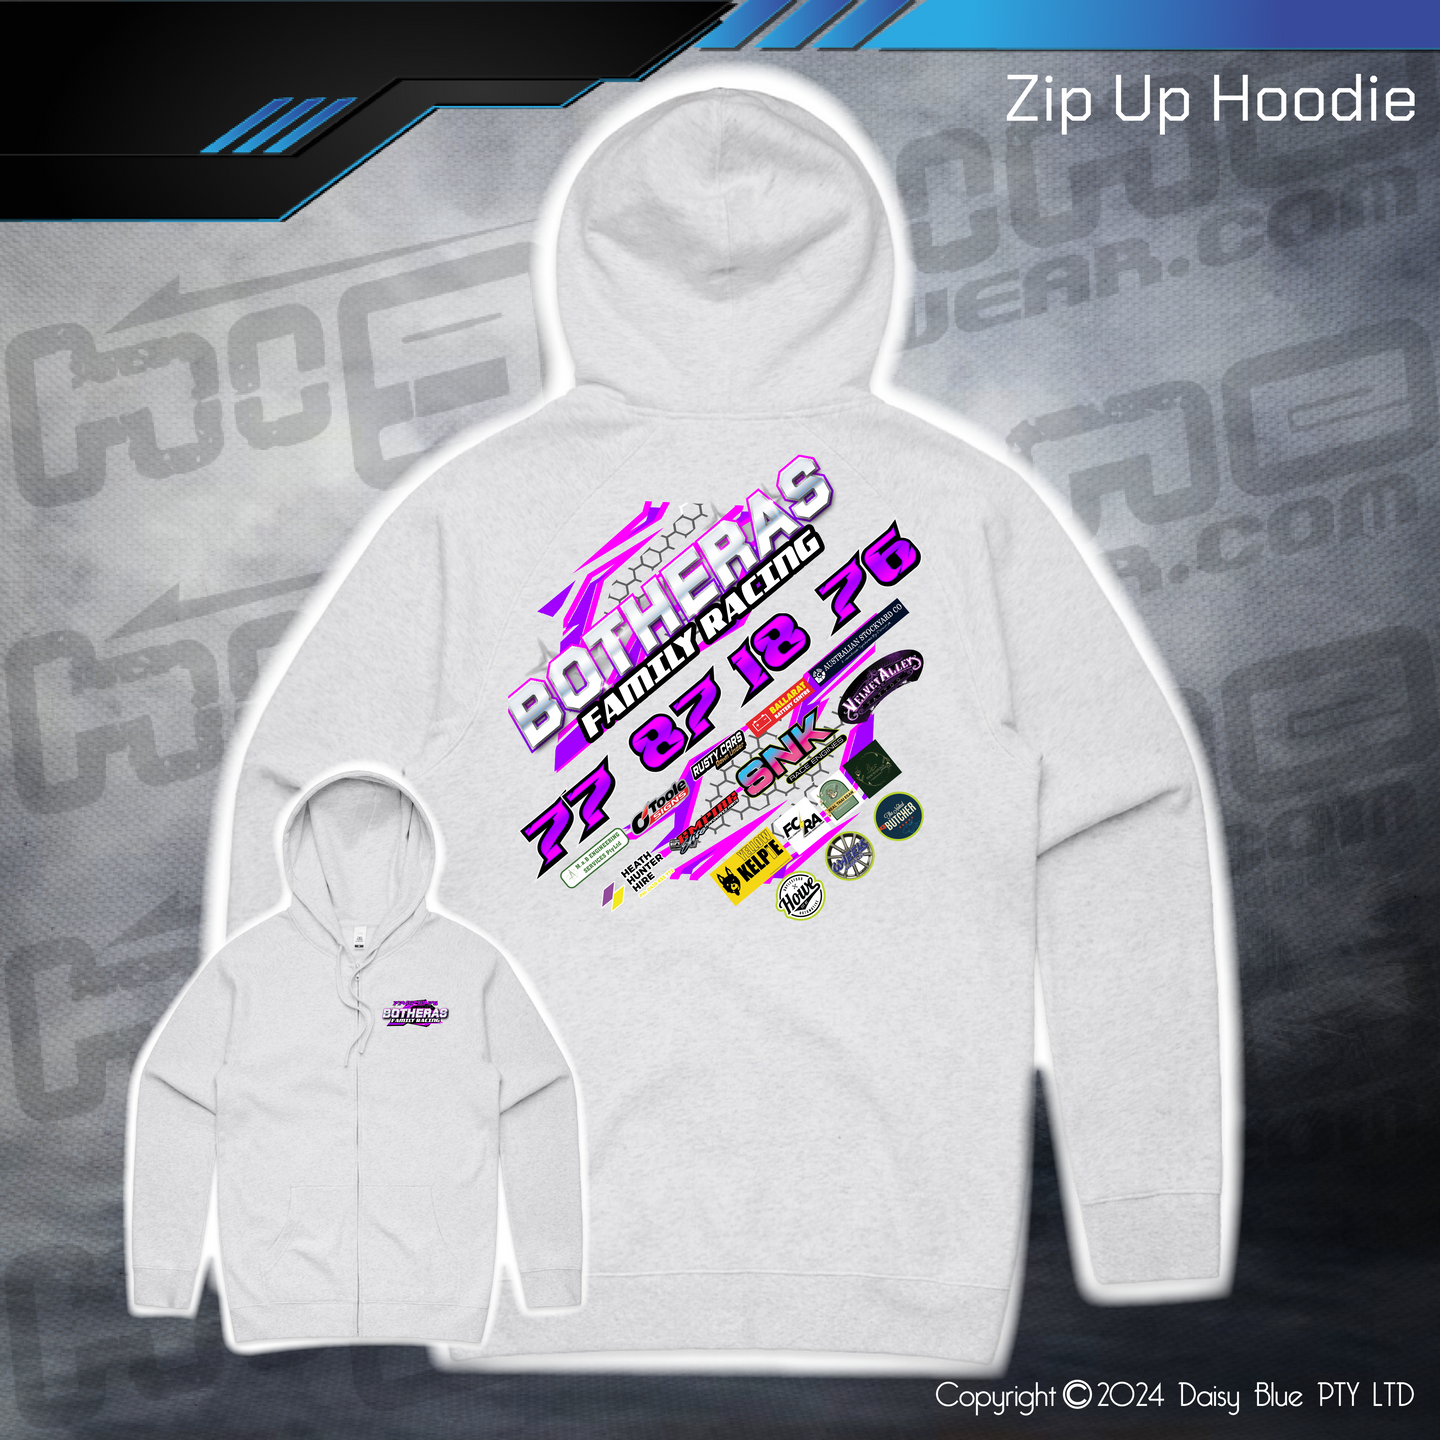 Zip Up Hoodie - Botheras Family Racing